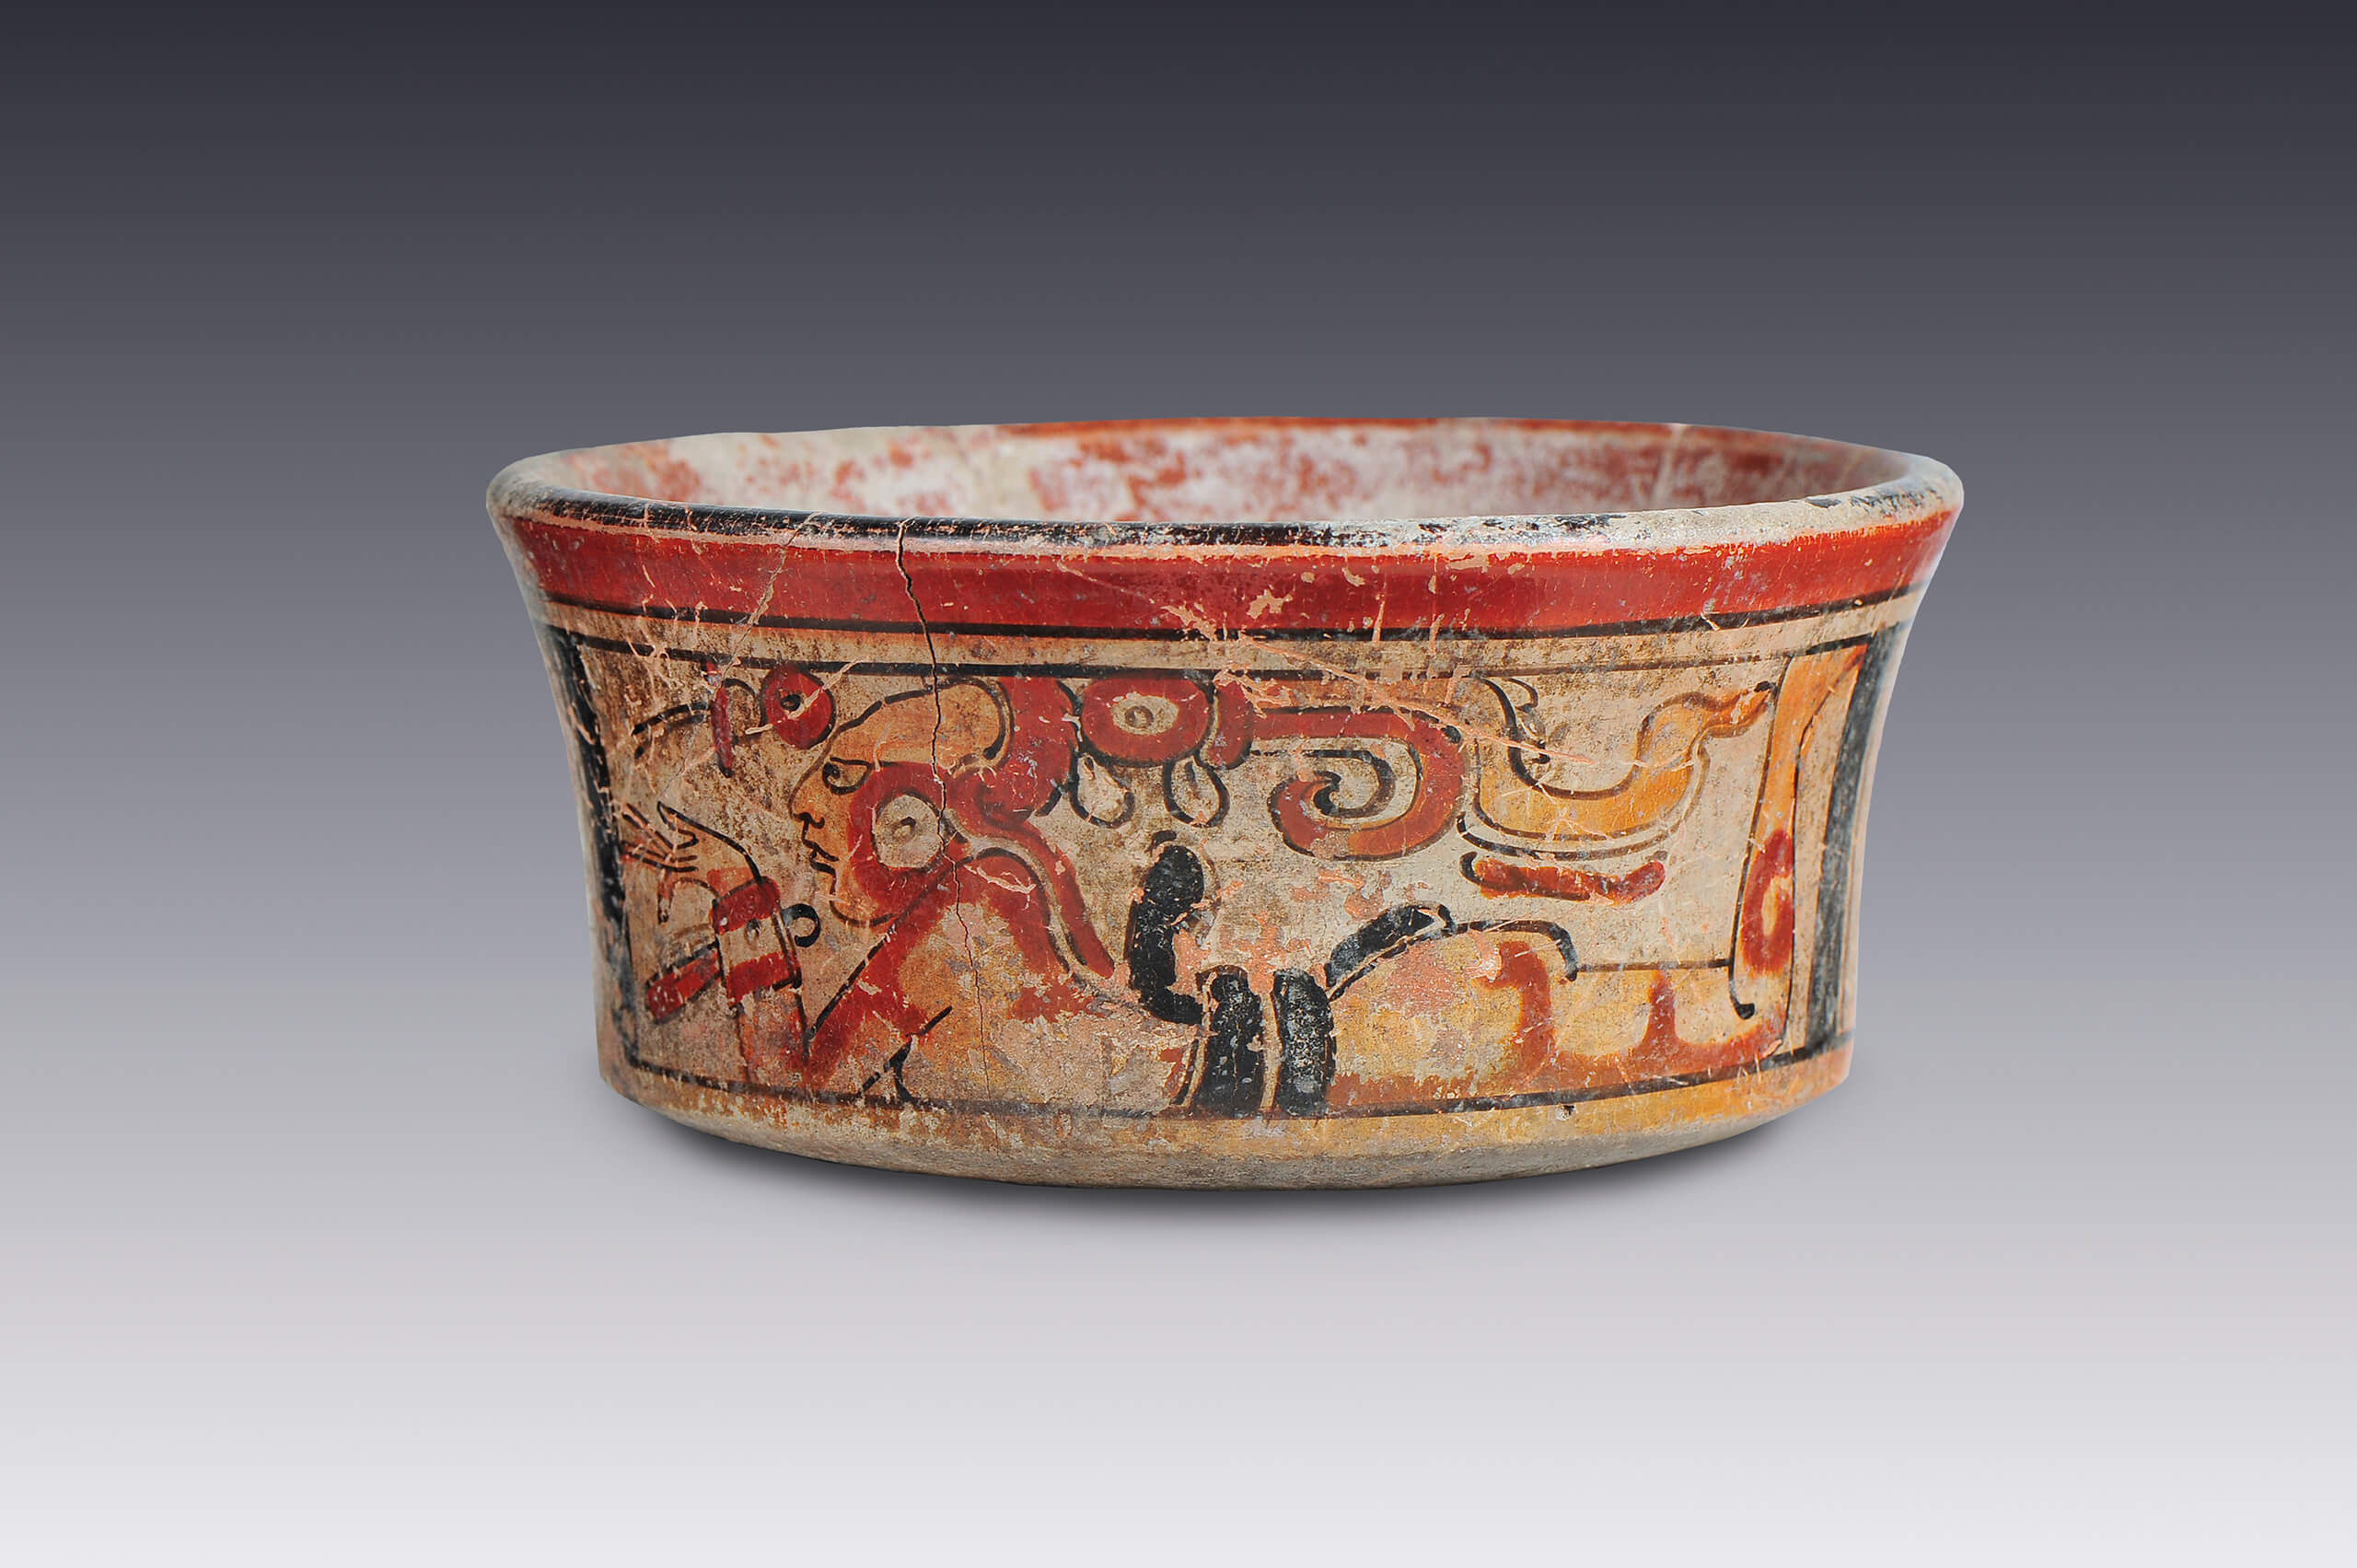 Vaso ceremonial | El México antiguo. Salas de Arte Prehispánico | Museo Amparo, Puebla